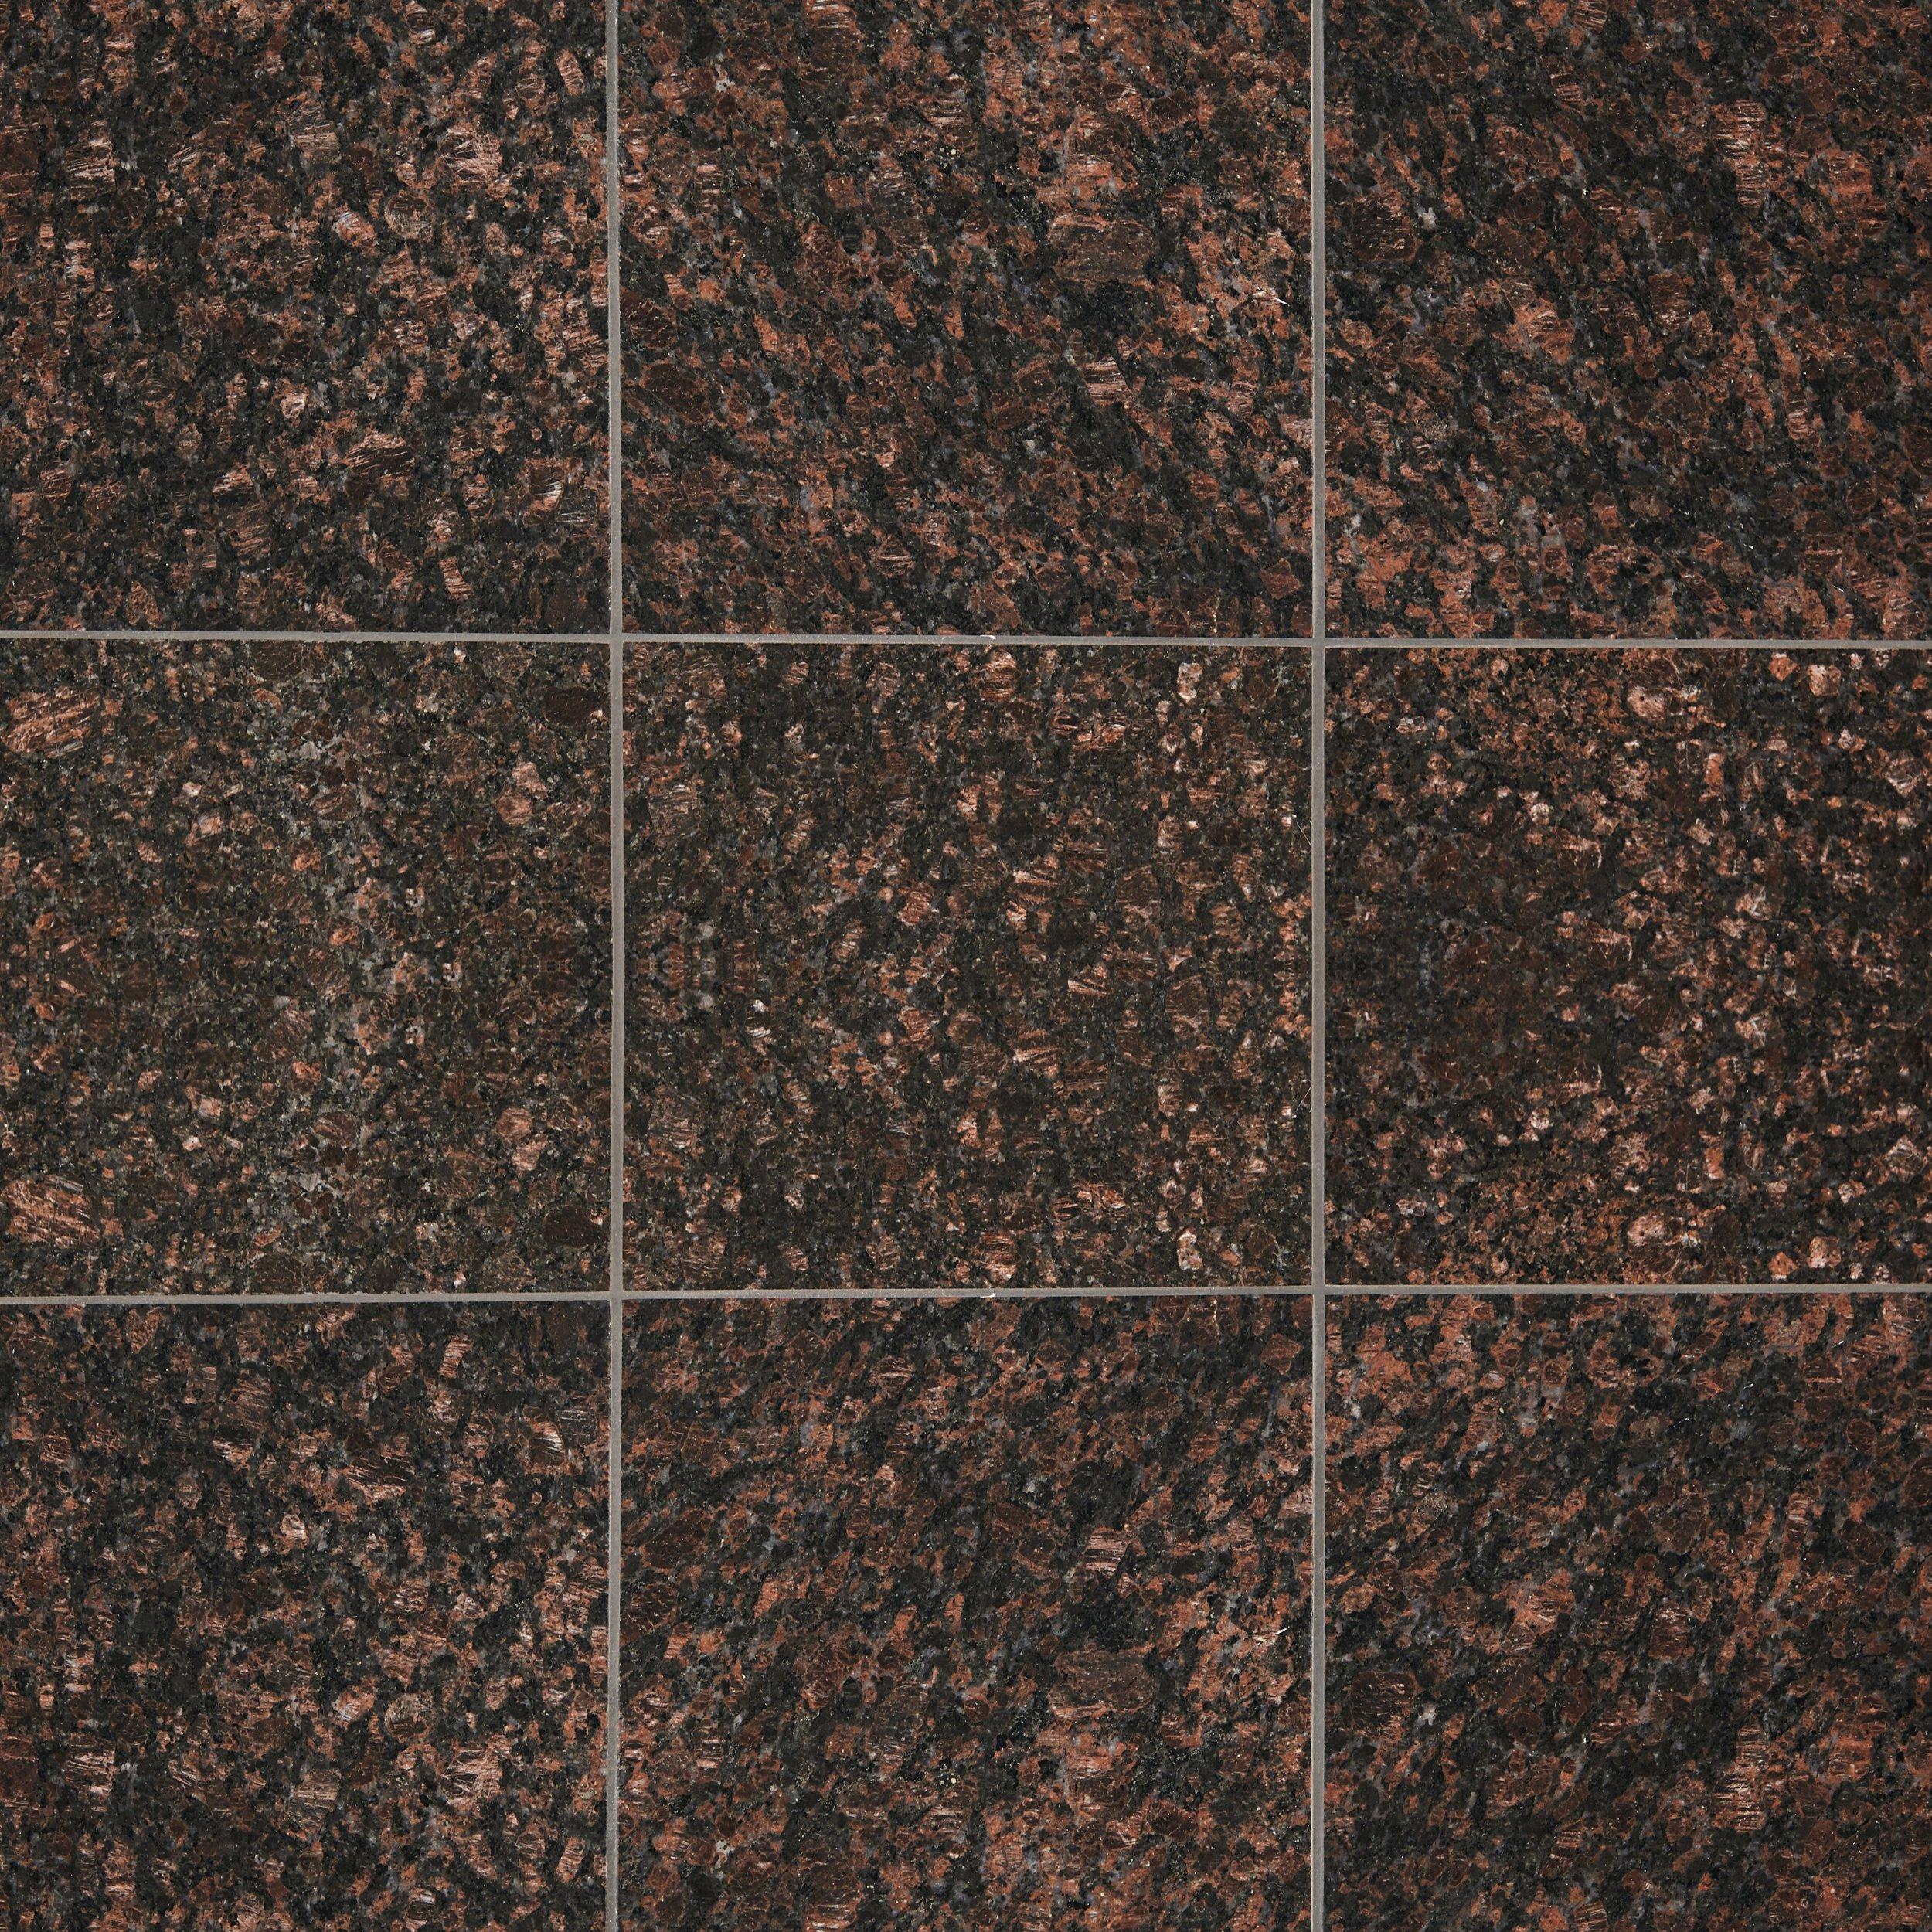 Tan Brown Granite Tile 12 X 12 923103615 Floor And Decor